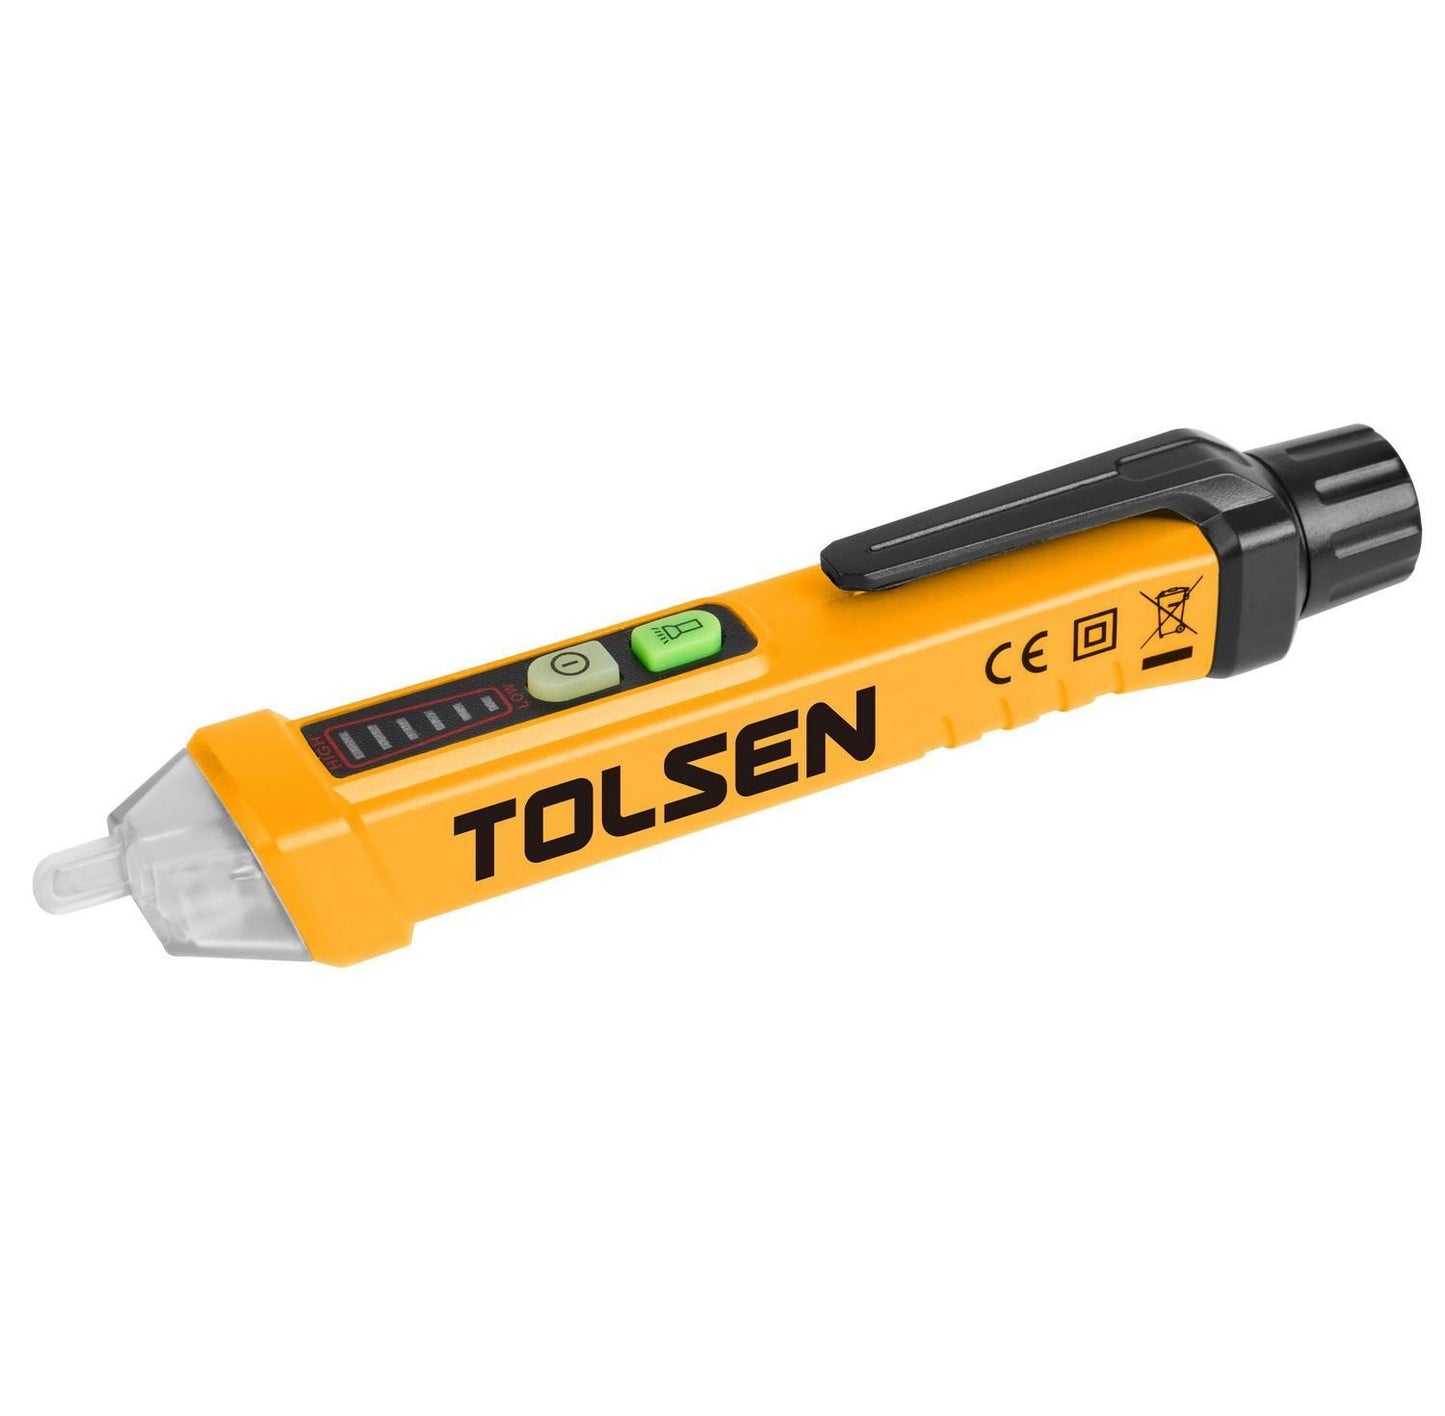 Non-contact A/C voltage detector - TOLSEN 